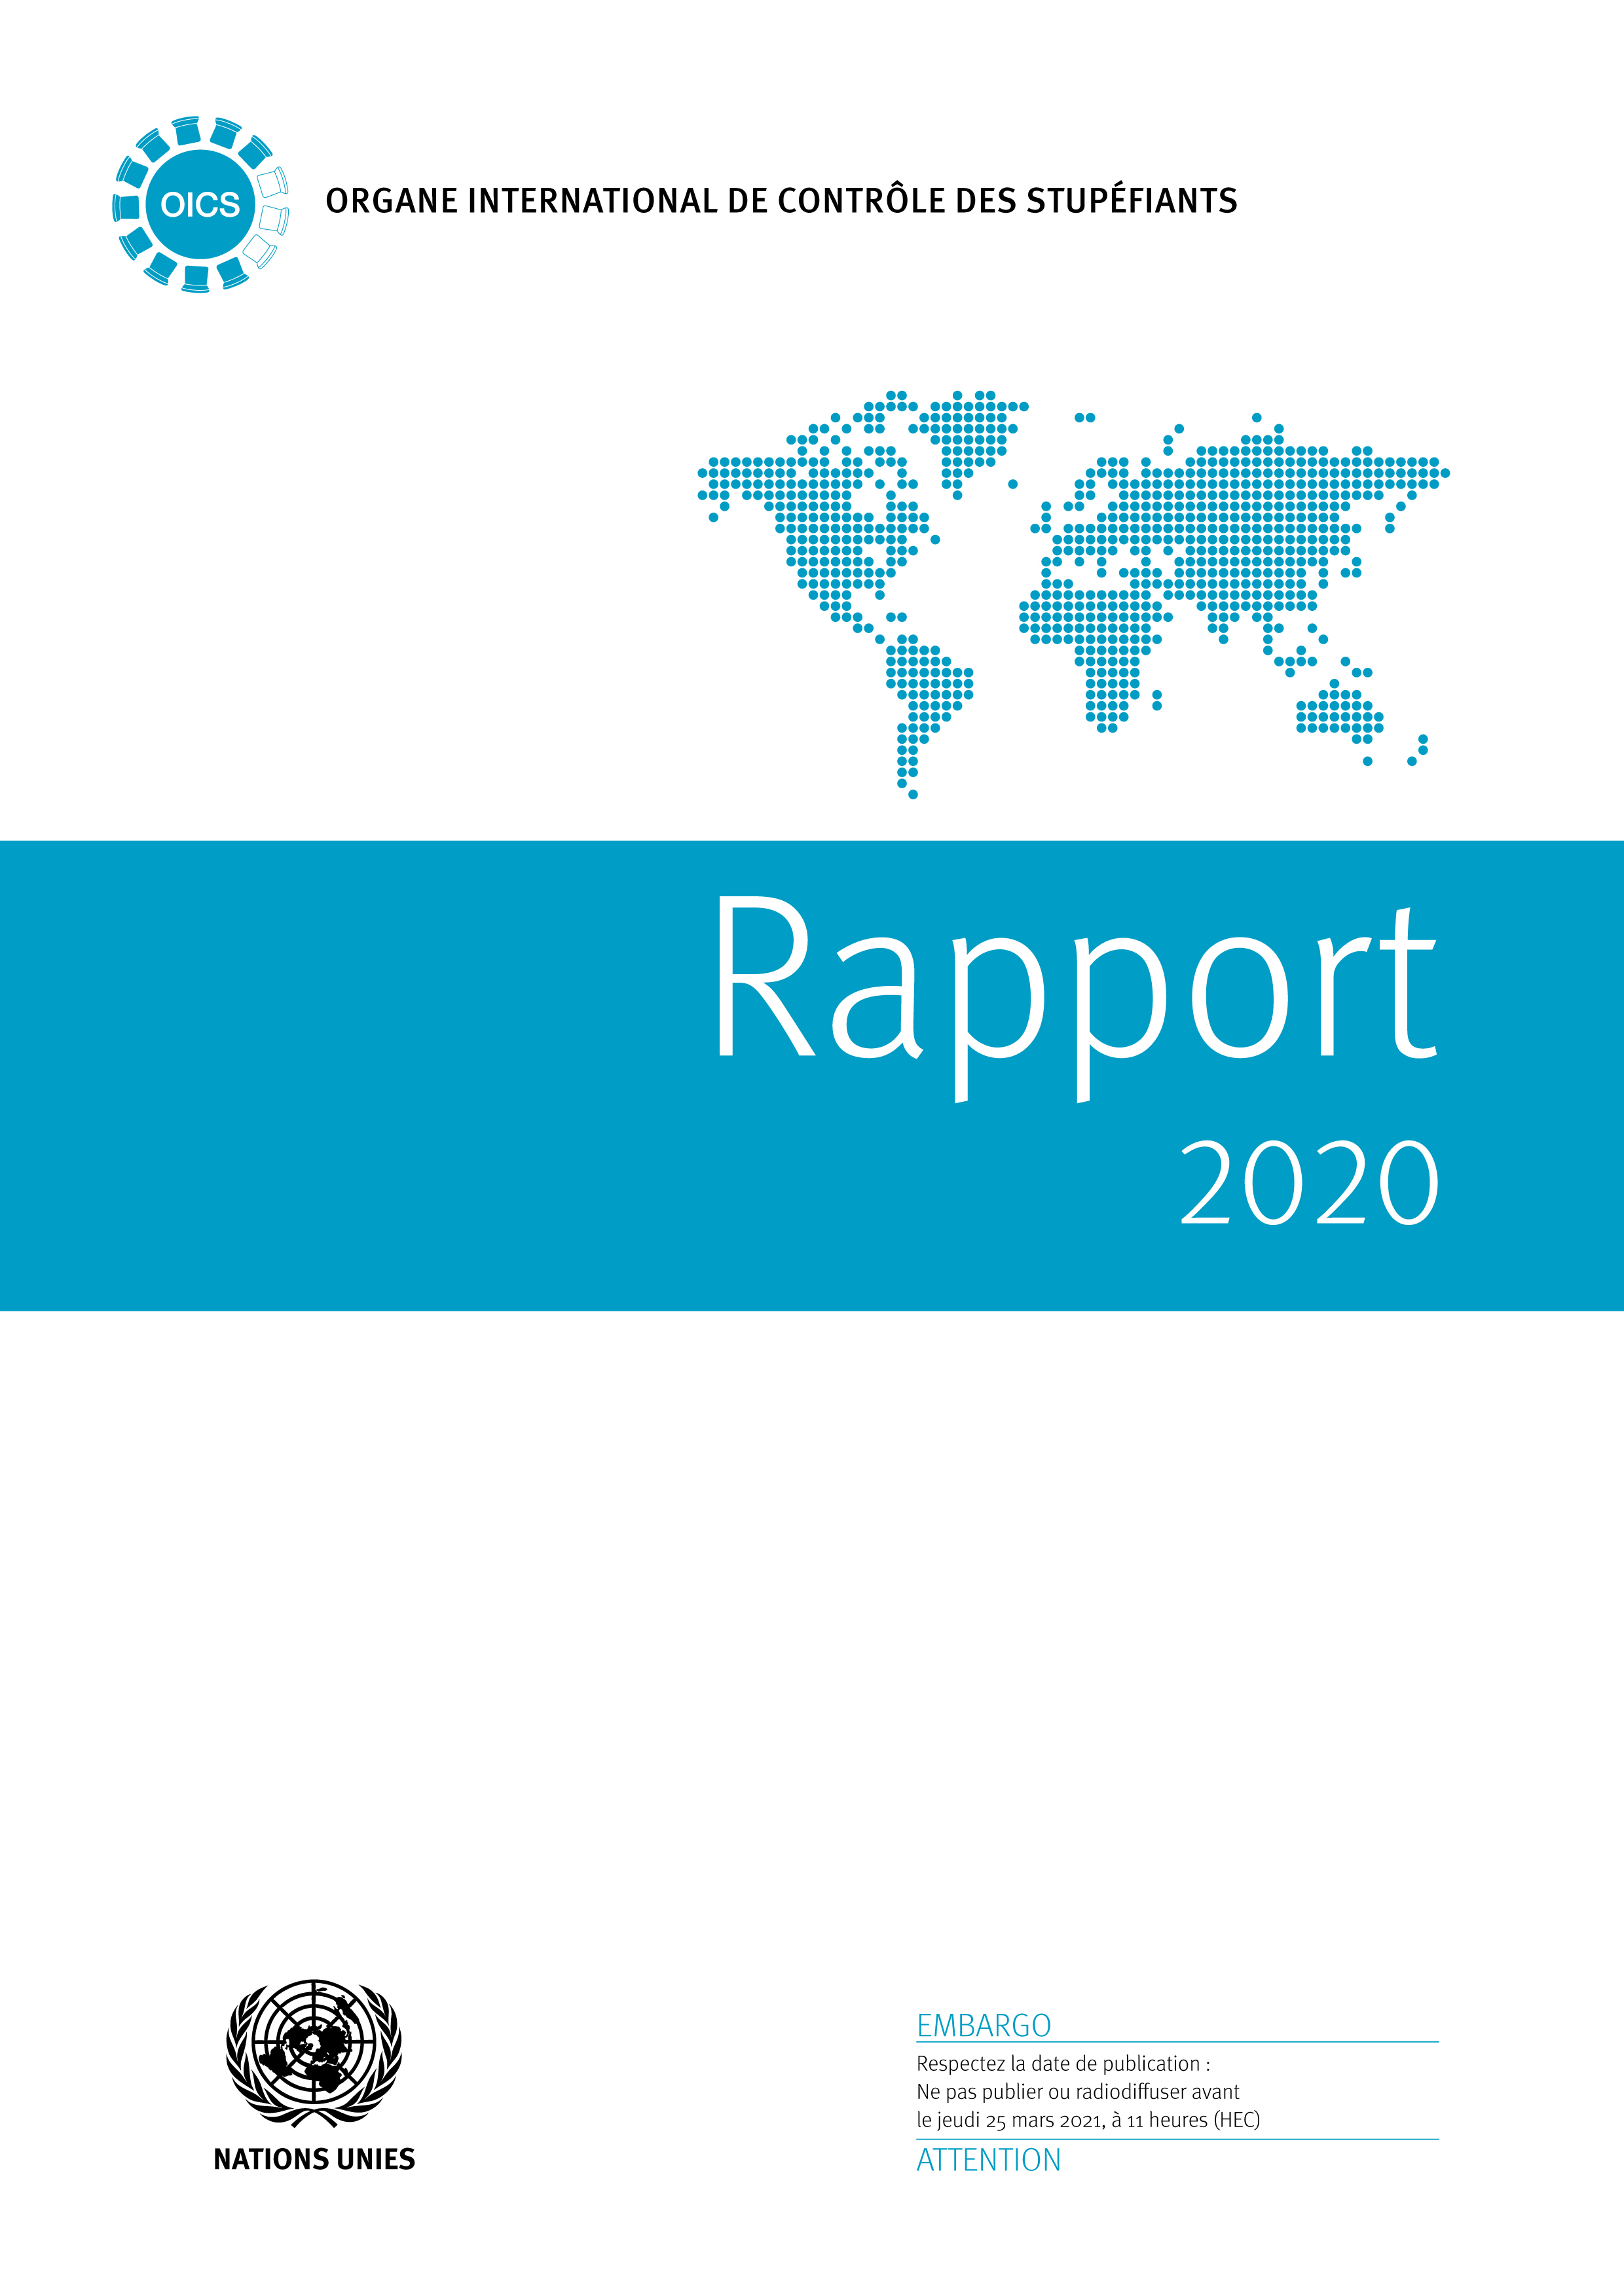 image of Rapport de l'Organe international de contrôle des stupéfiants pour 2020